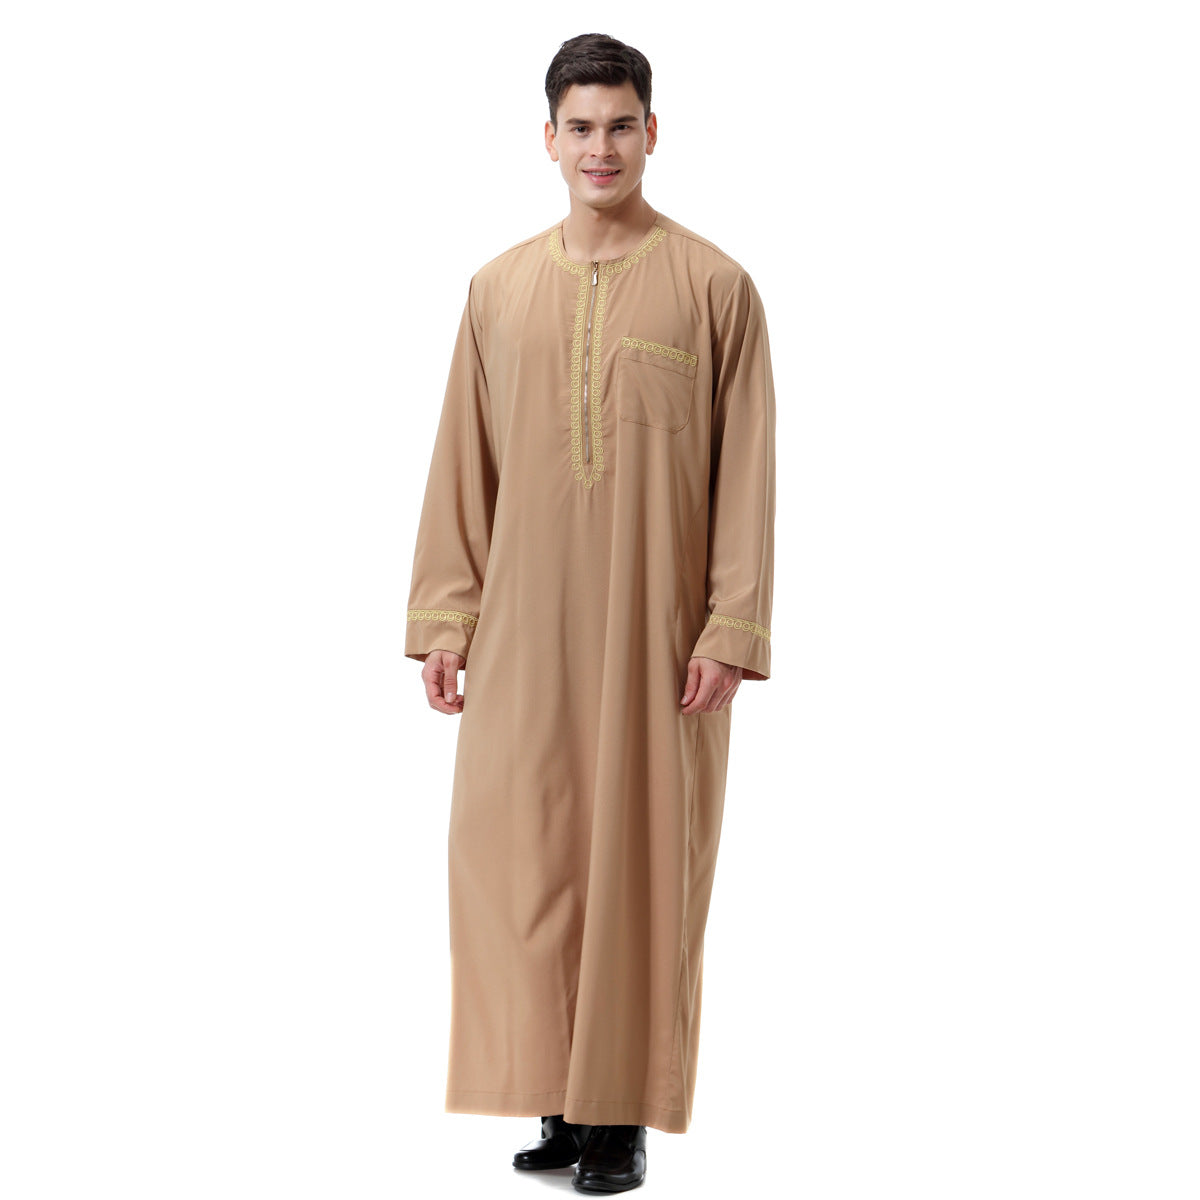 Muslim Arab Middle East Men's Printed Zip Round Neck Robe